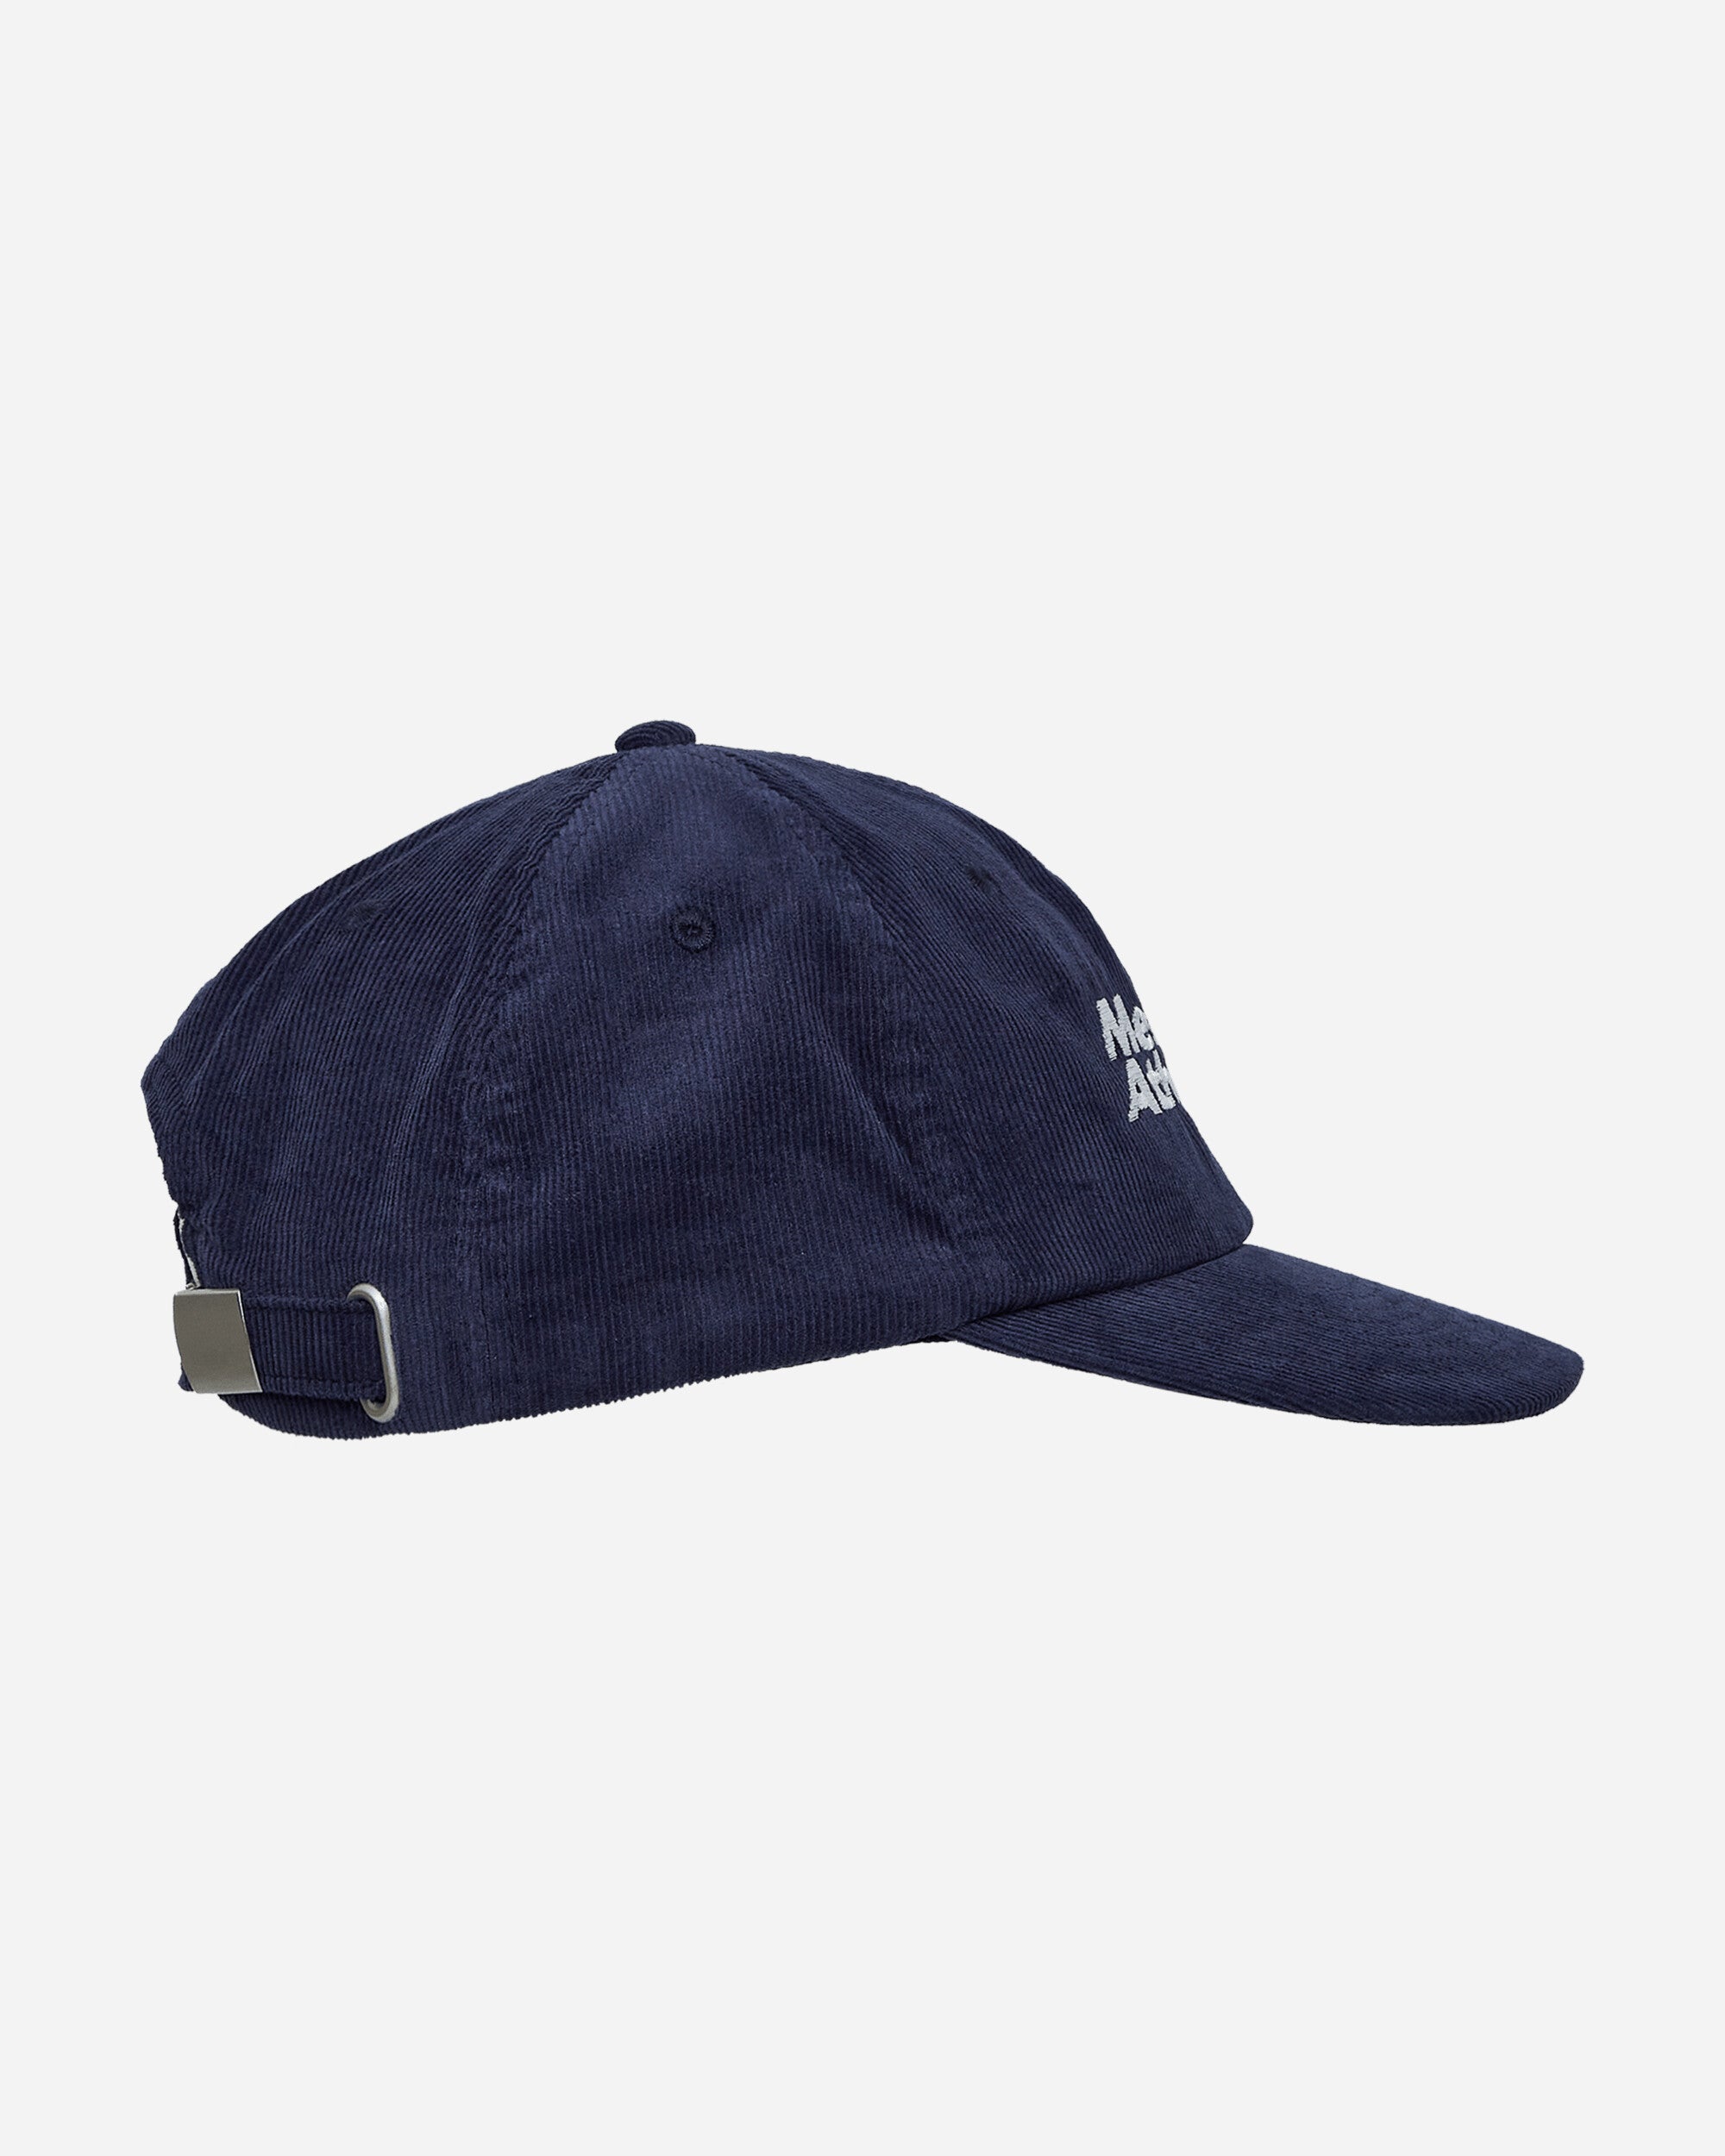 Mental Athletic Corduroy Cap Blue Hats Caps MACORDUCAP BLUE